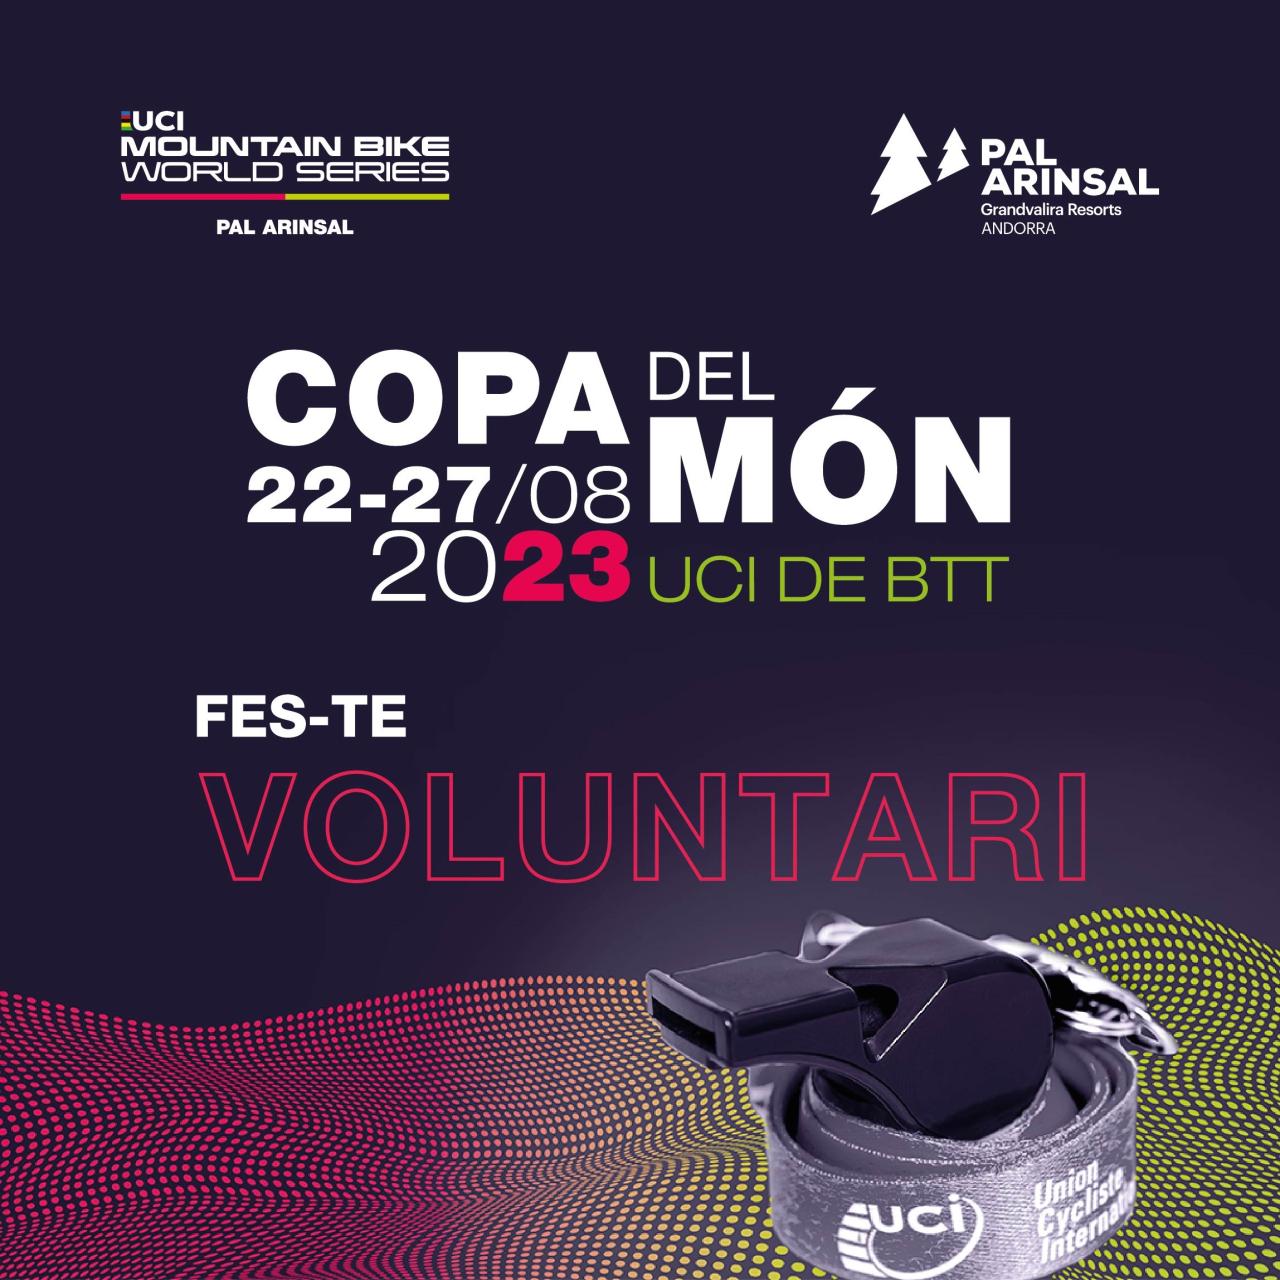 Andorra acogerá del 22 al 27 de agosto la Copa del Mundo UCI de MTB en Pal Arinsal y para hacer posible todo el evento, la estación requiere de 250 voluntarios para su organización